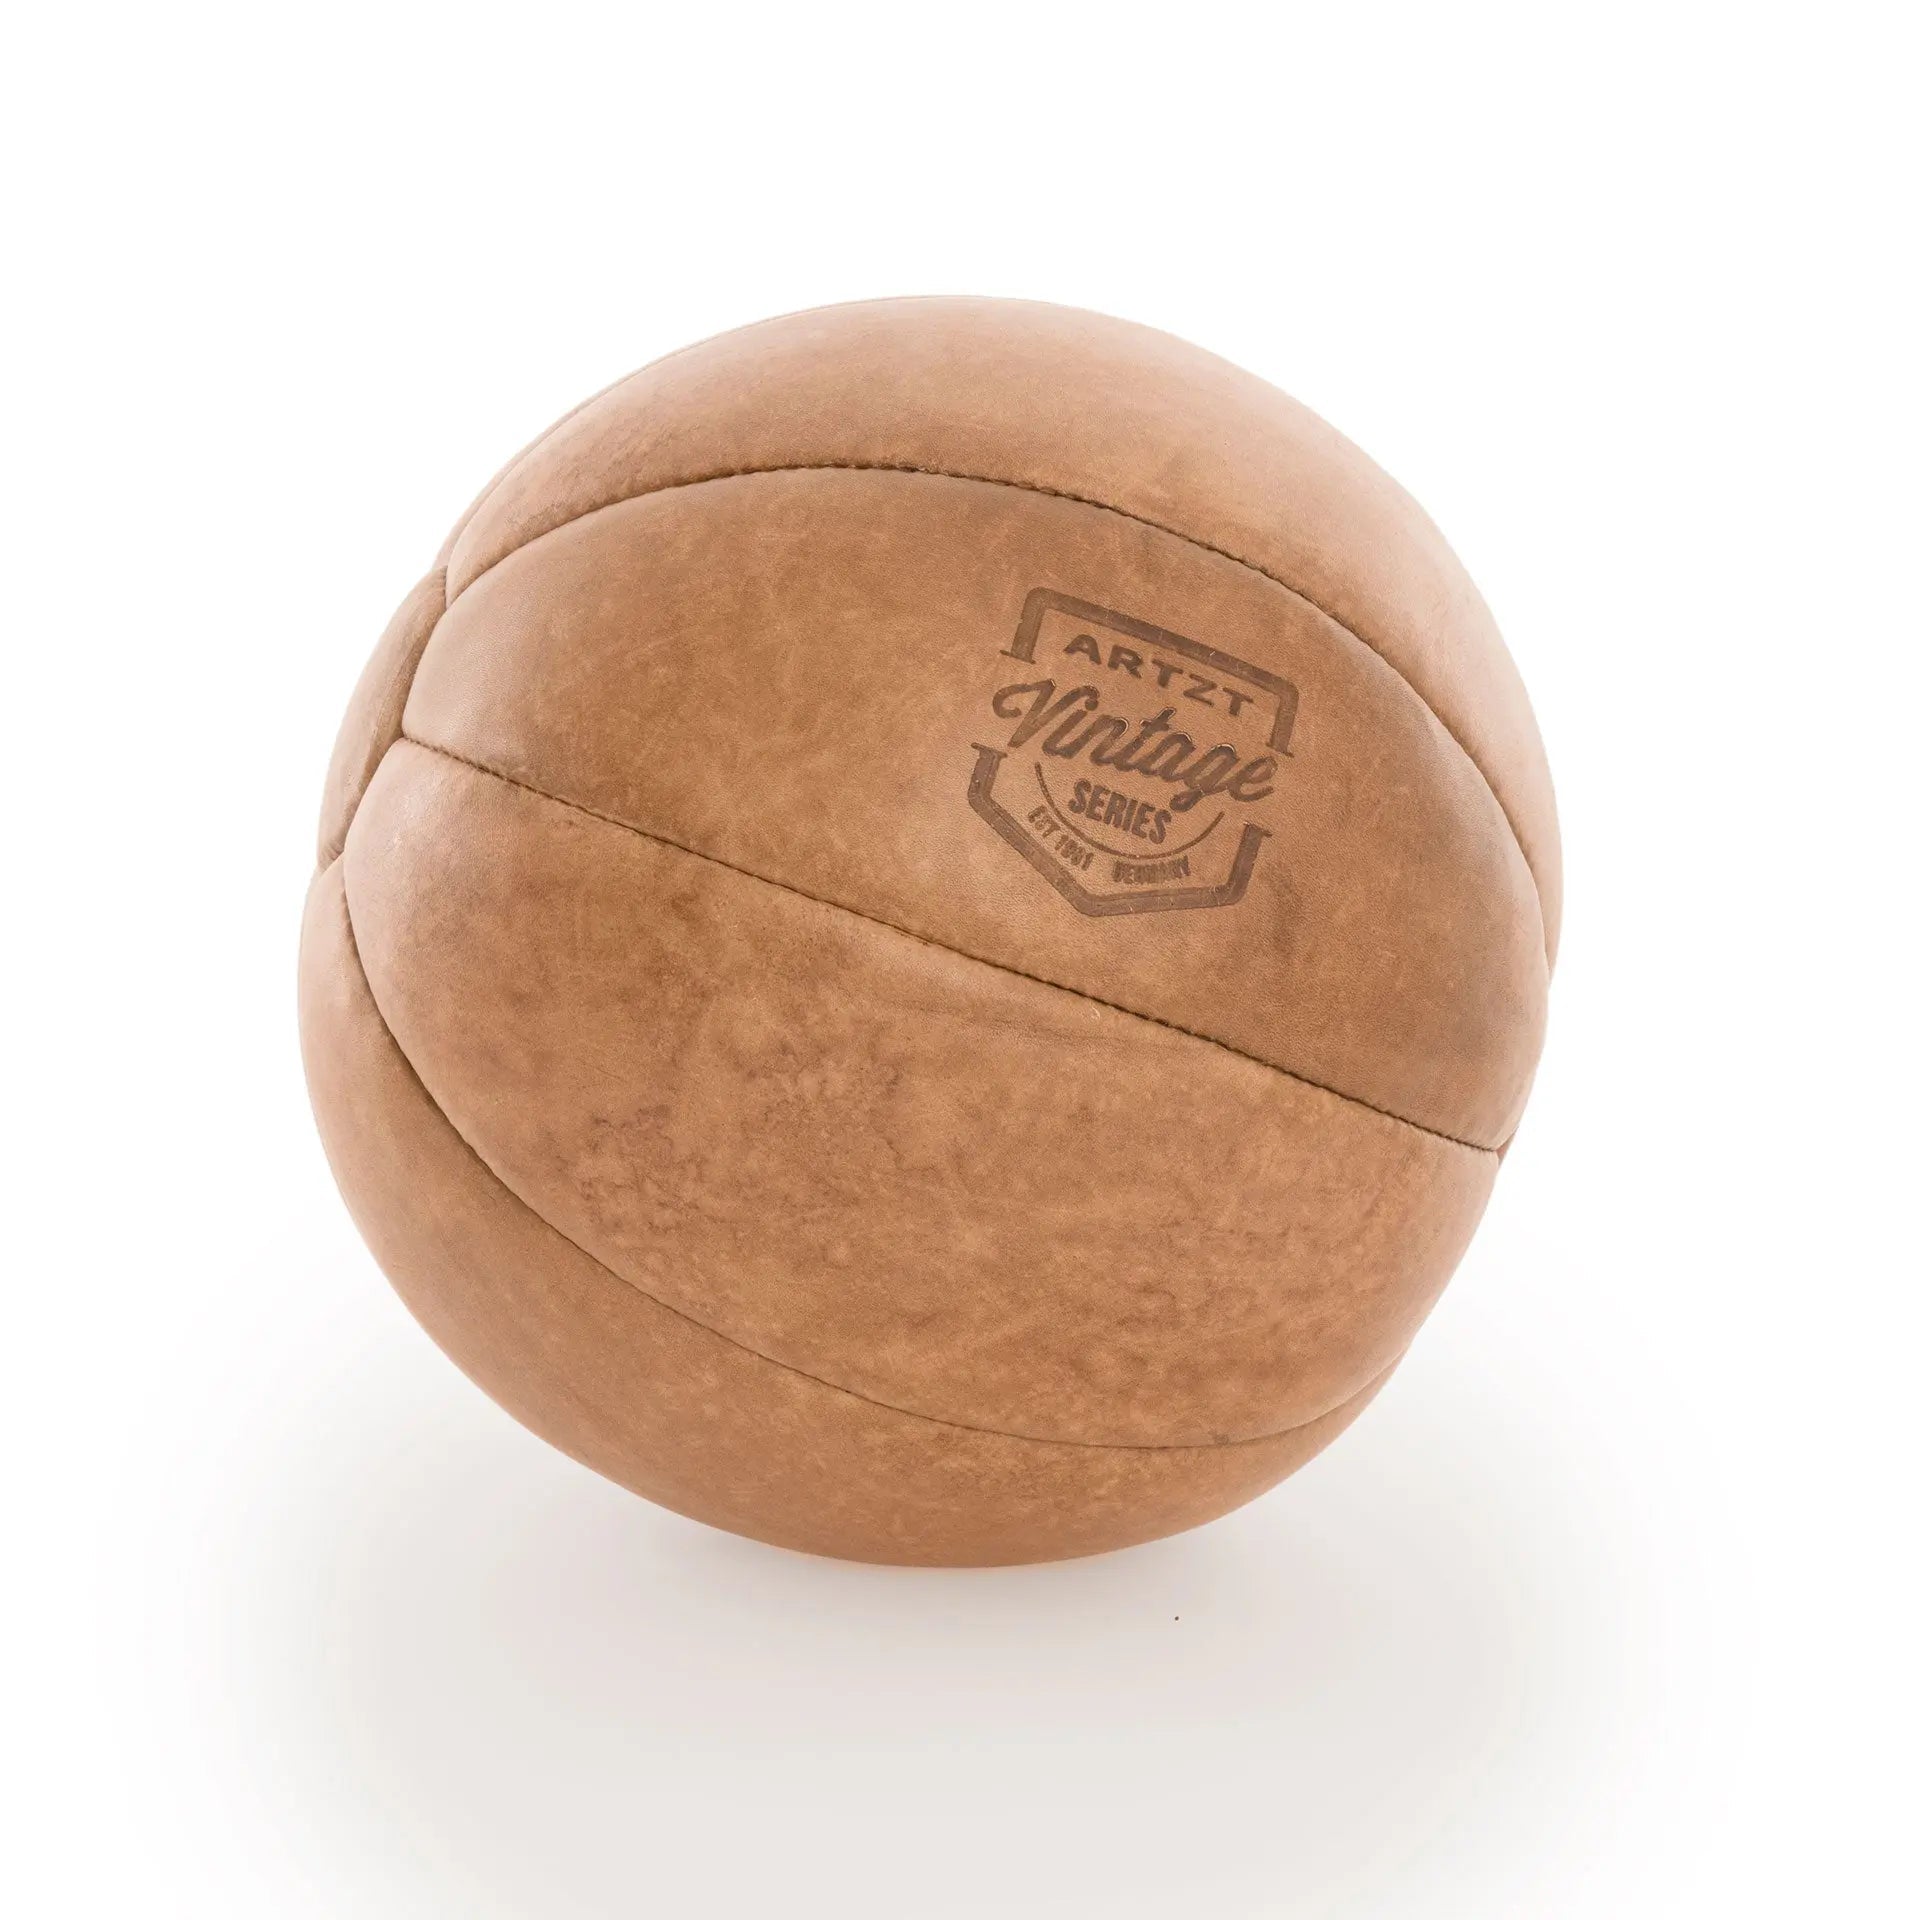 Medizinball Medizinball ARTZT Vintage Series 3 kg  